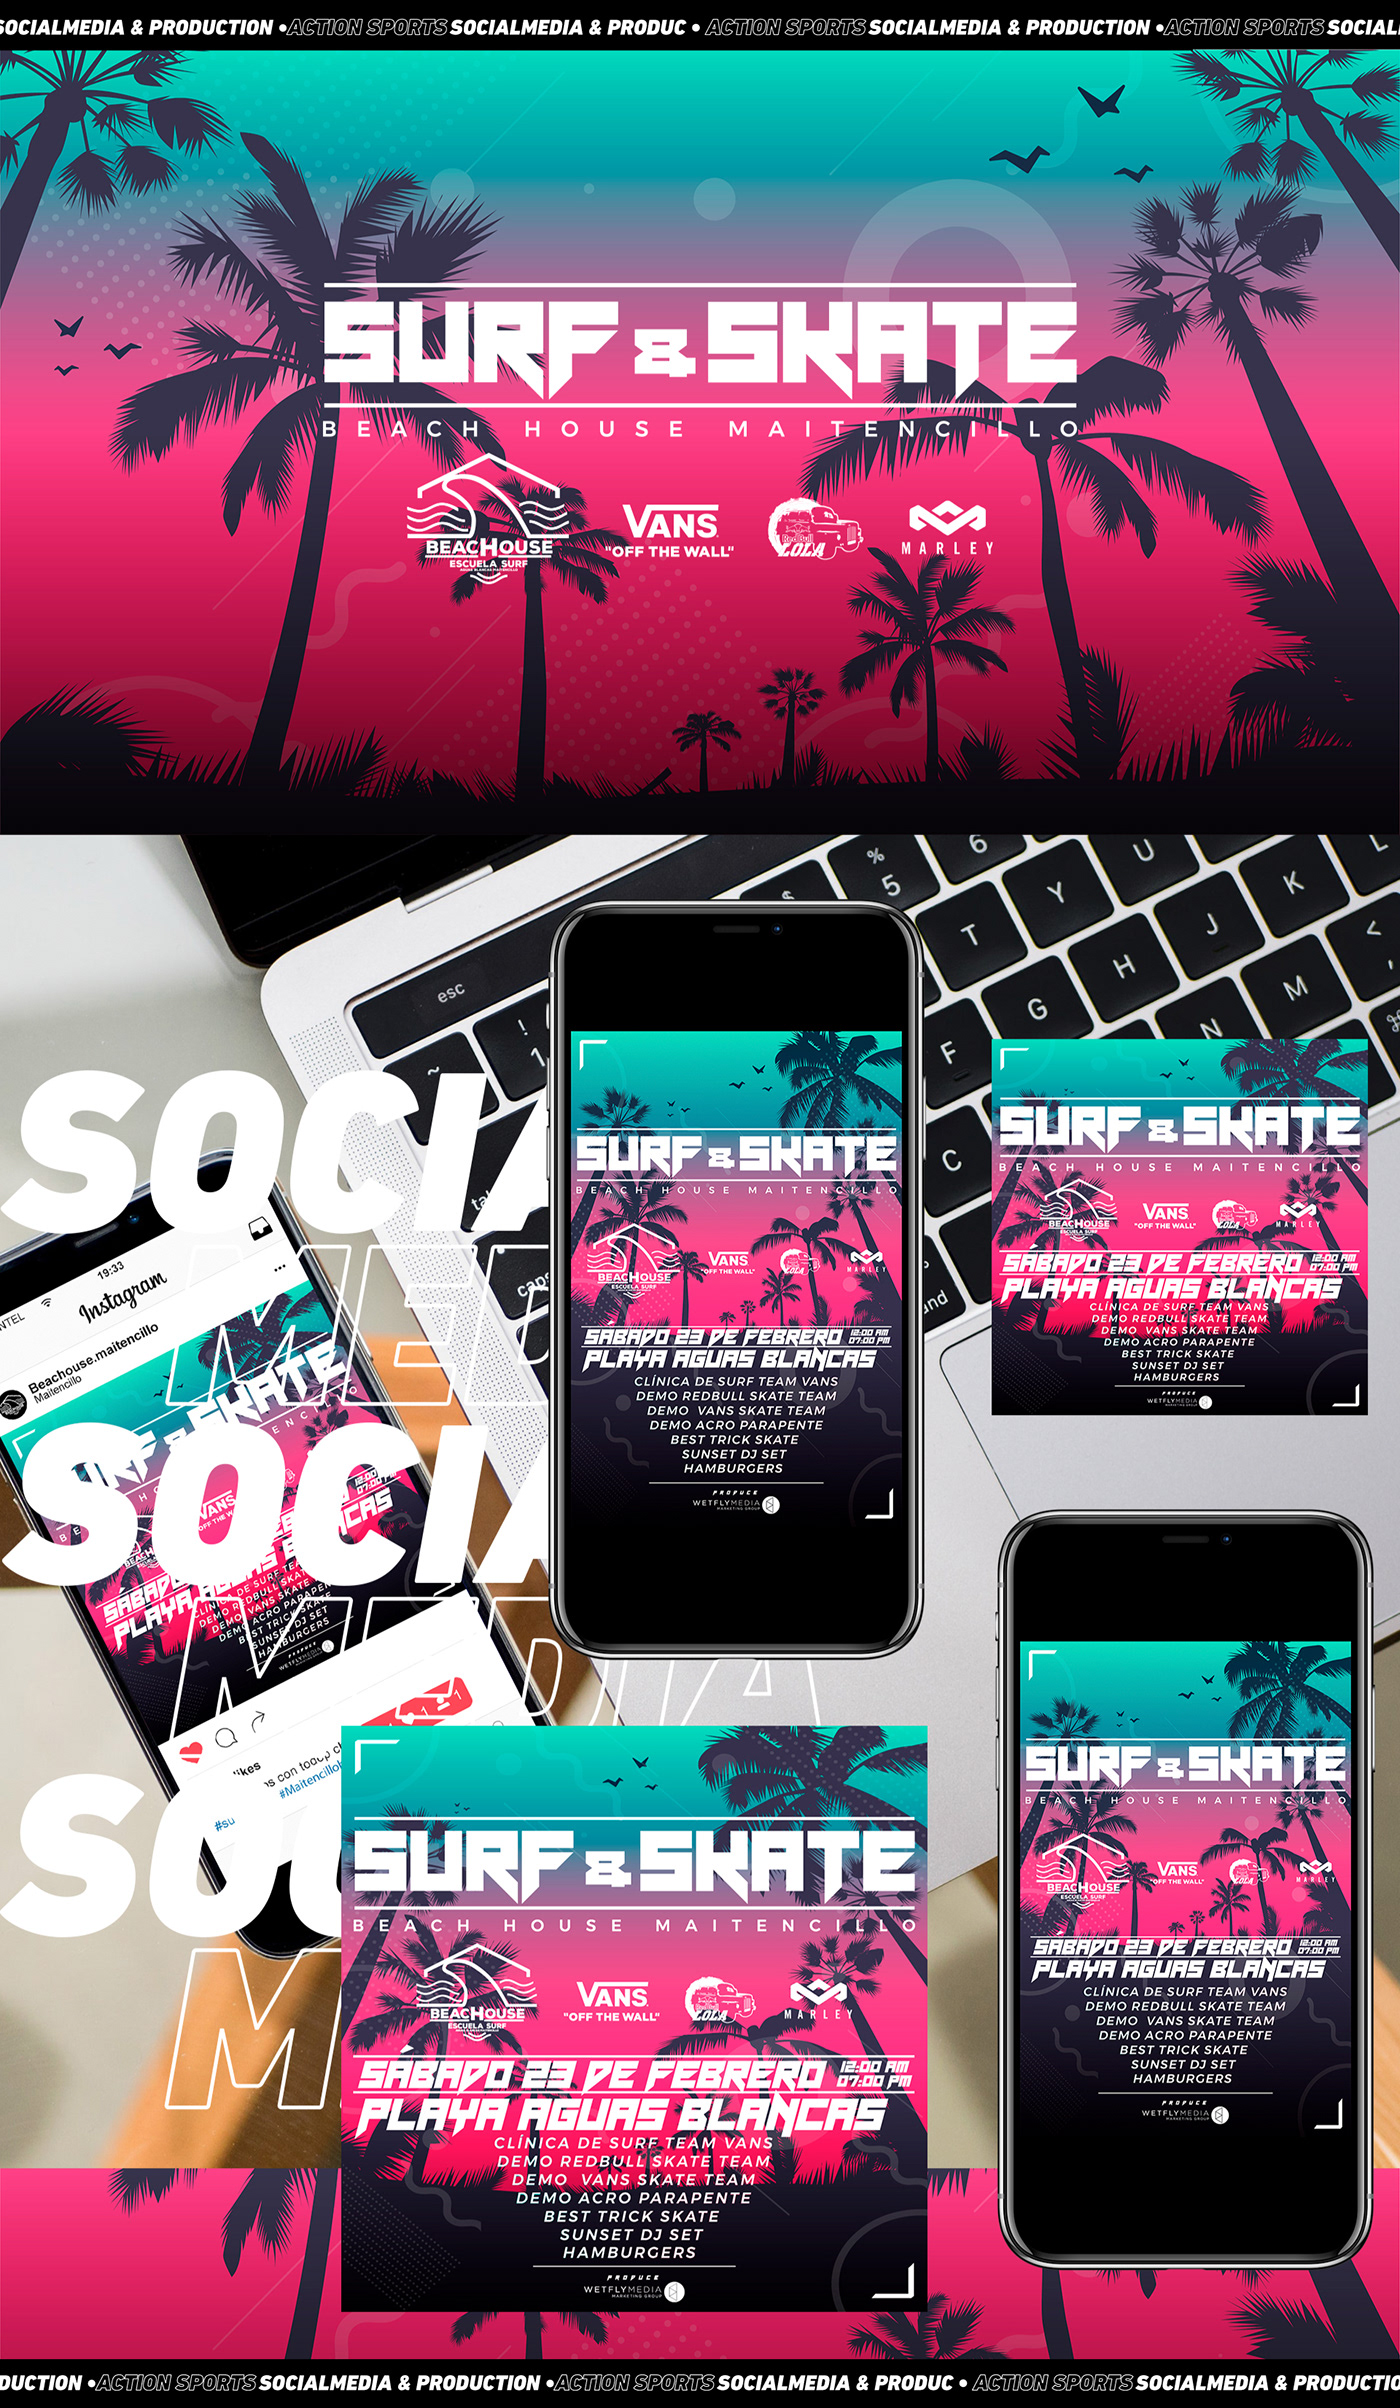 Surf rider Landscape Production advertisement publicidad diseñografico RRSS photograpy